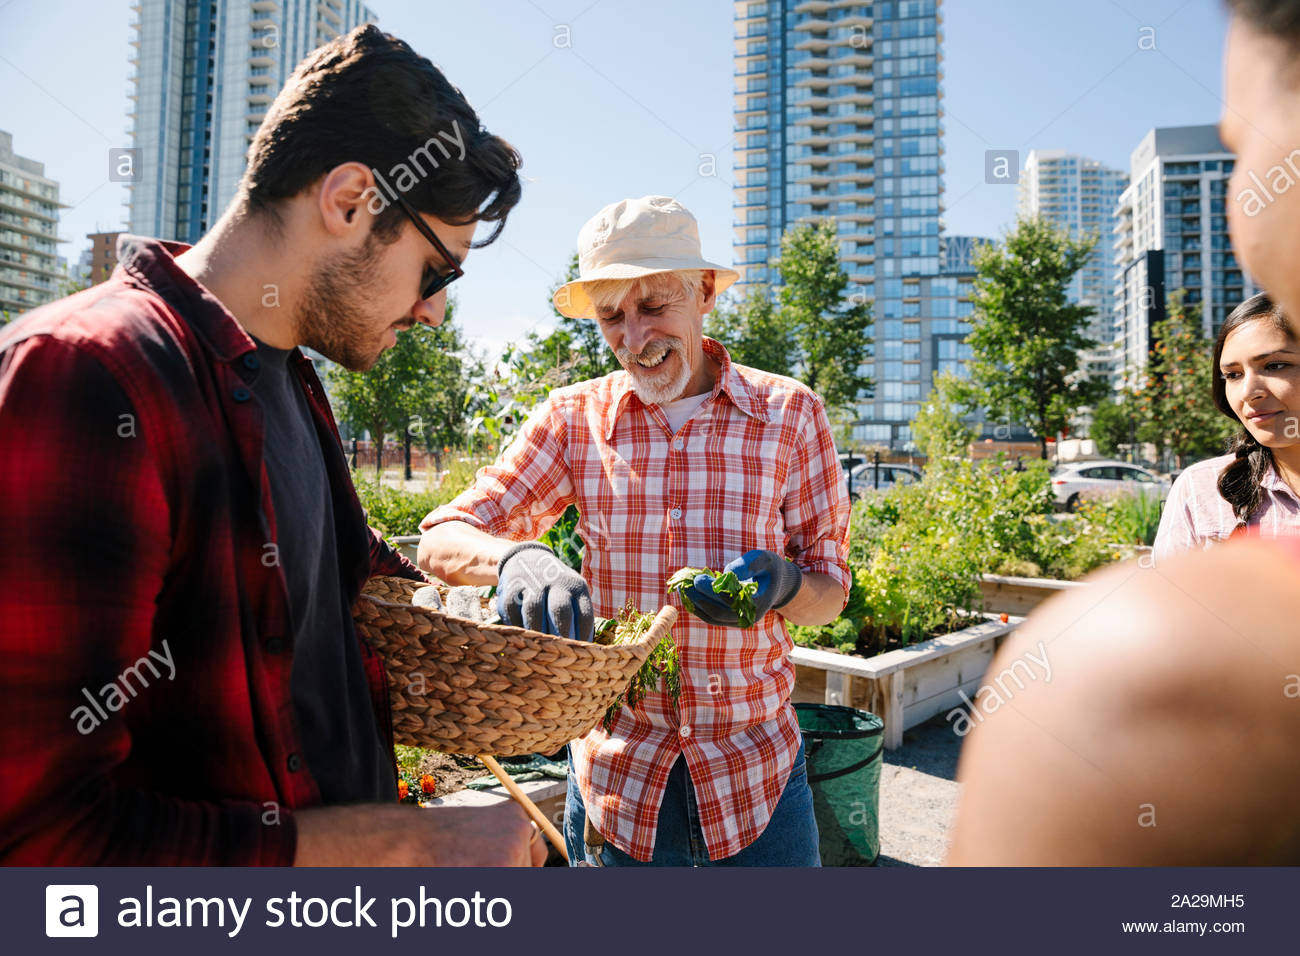 Man Unterricht im Garten arbeiten junge Erwachsene in sonniger, städtischen Gemeinschaft garten Stockfoto